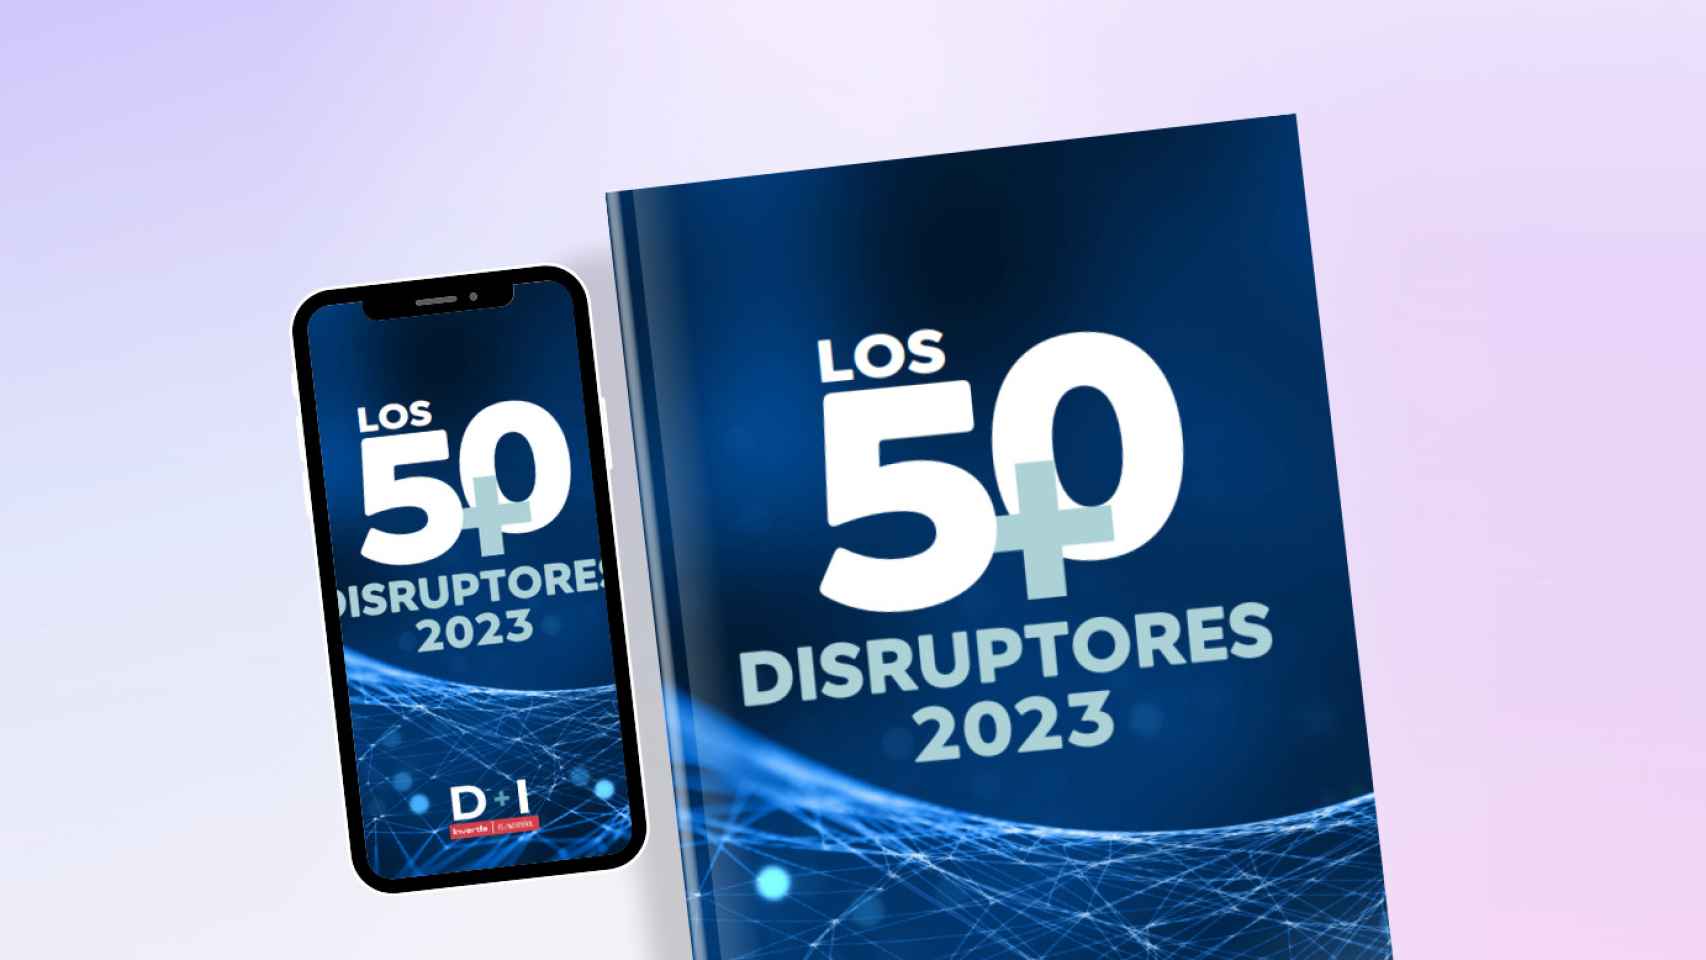 Los 50 + disruptores se publicará en papel y formato digital.